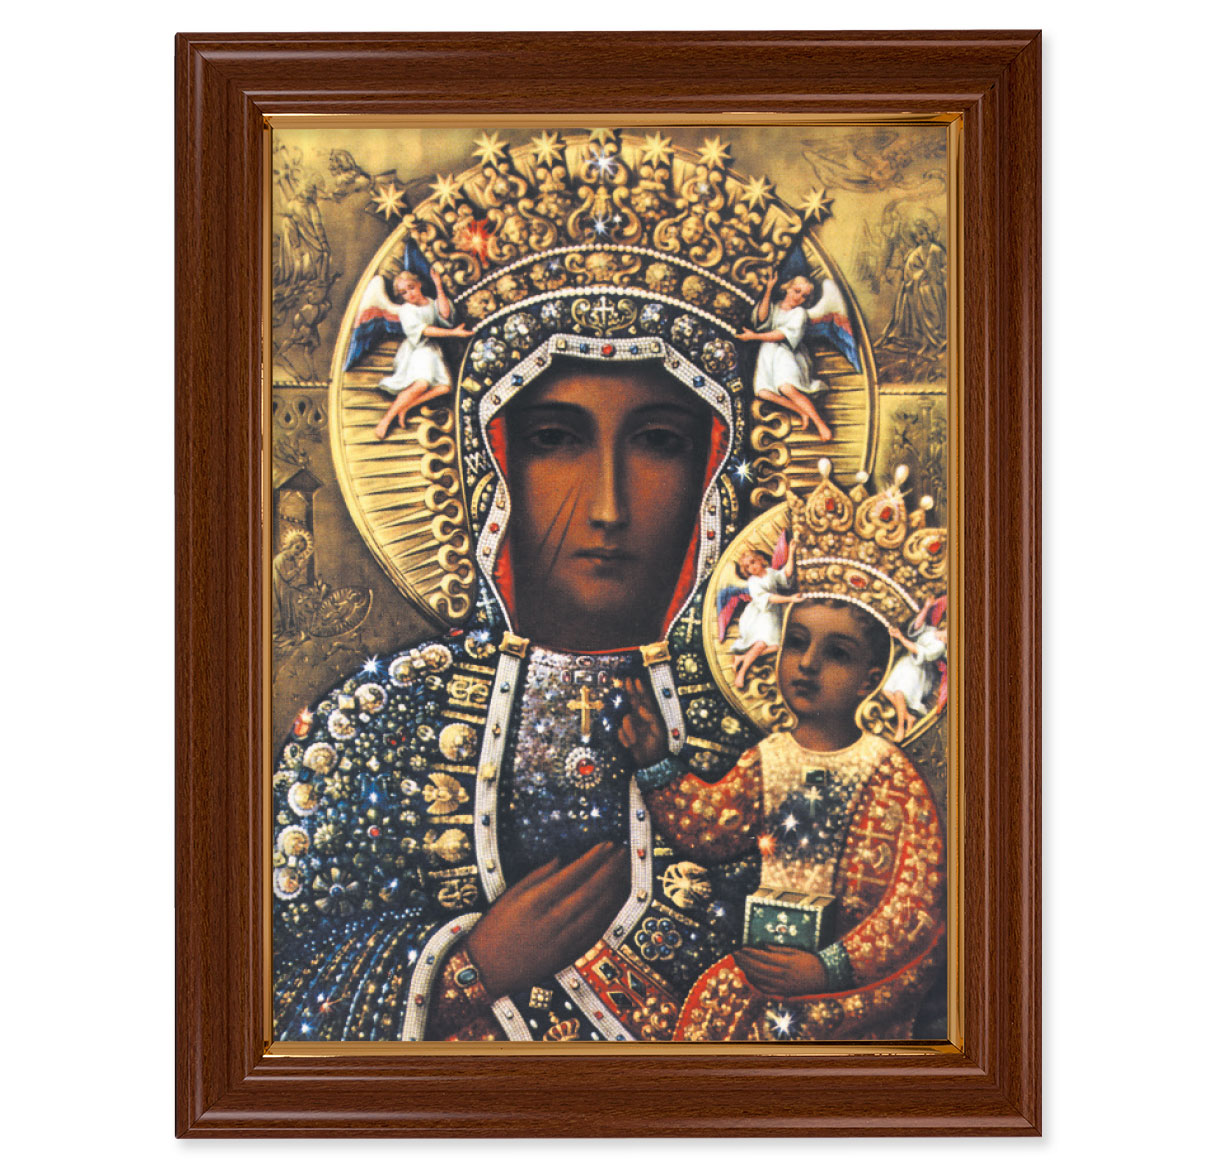 Our Lady of Czestochowa Walnut Finish Framed Art